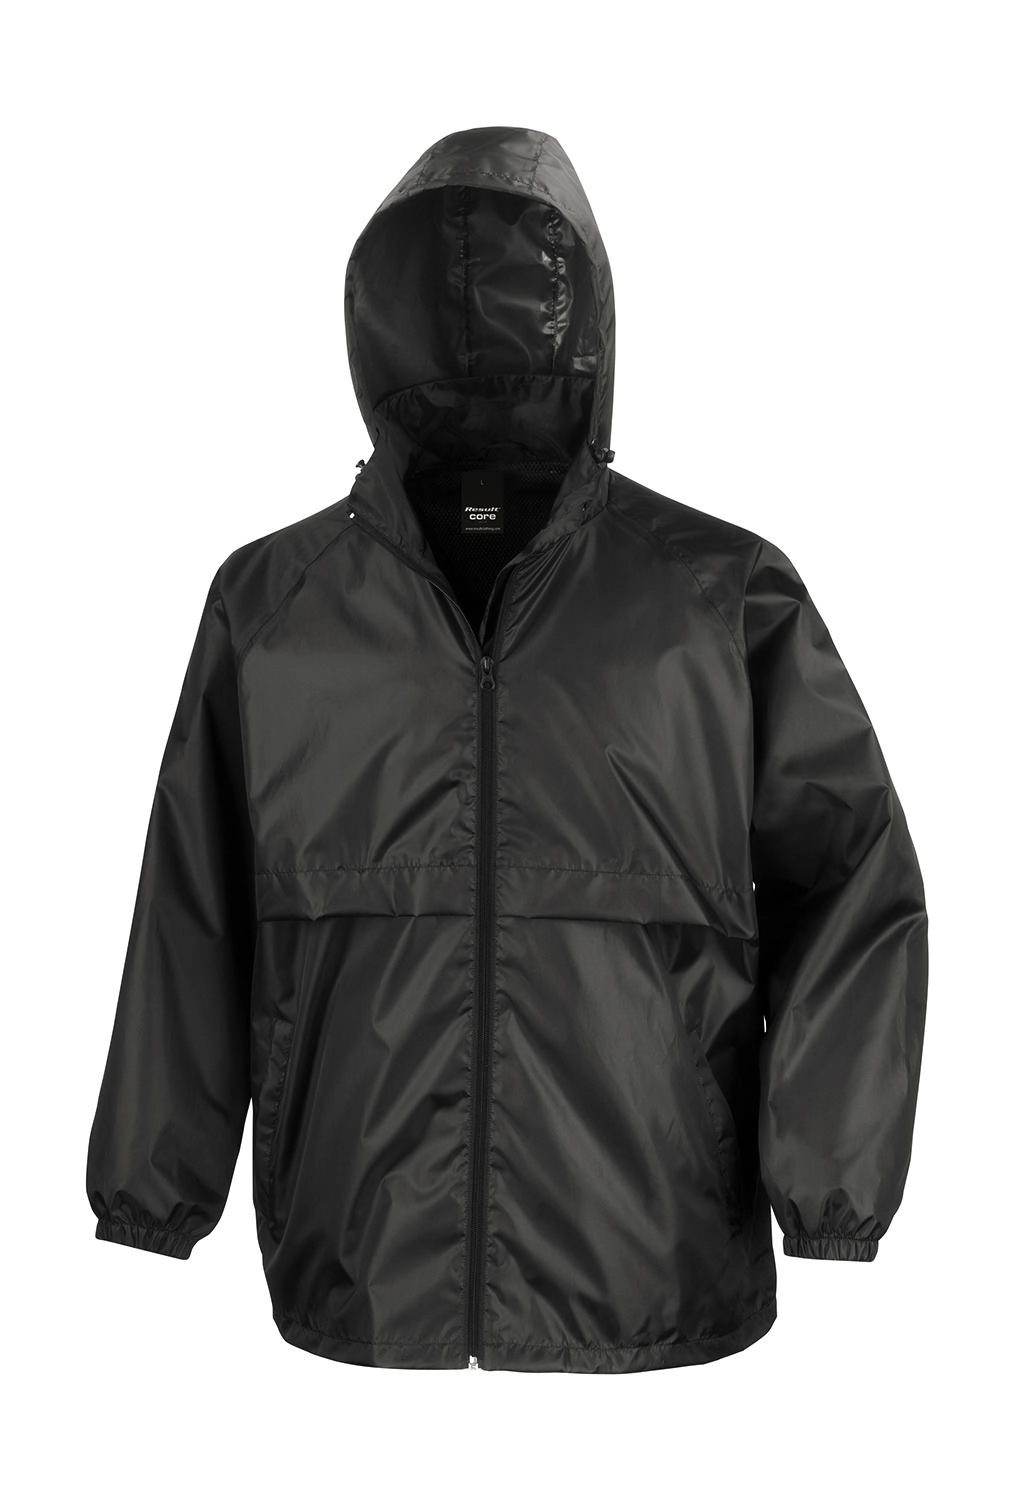 Lightweight Jacket zum Besticken und Bedrucken in der Farbe Black mit Ihren Logo, Schriftzug oder Motiv.